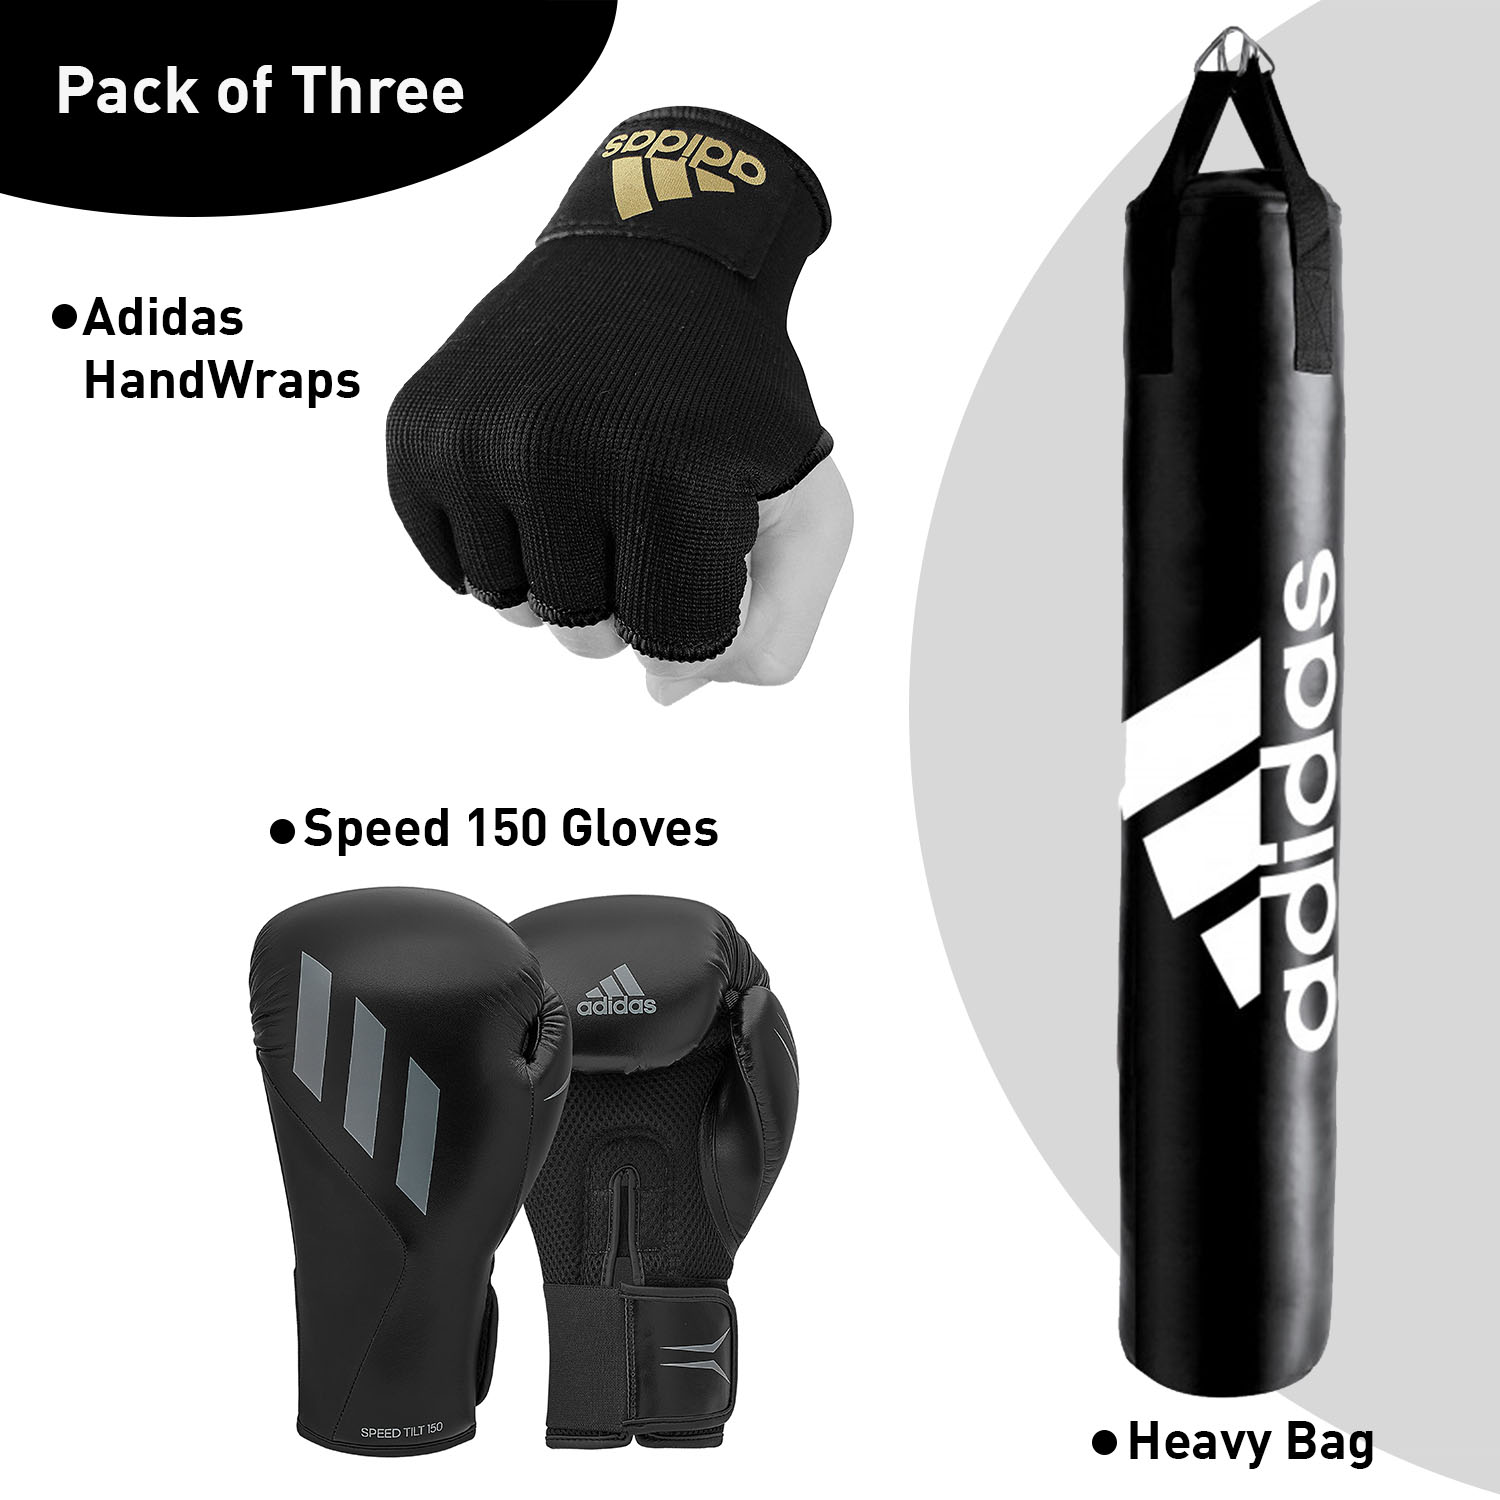 adidas Home bundle deal bag + Speed Tilt 150 and Inner Gloves